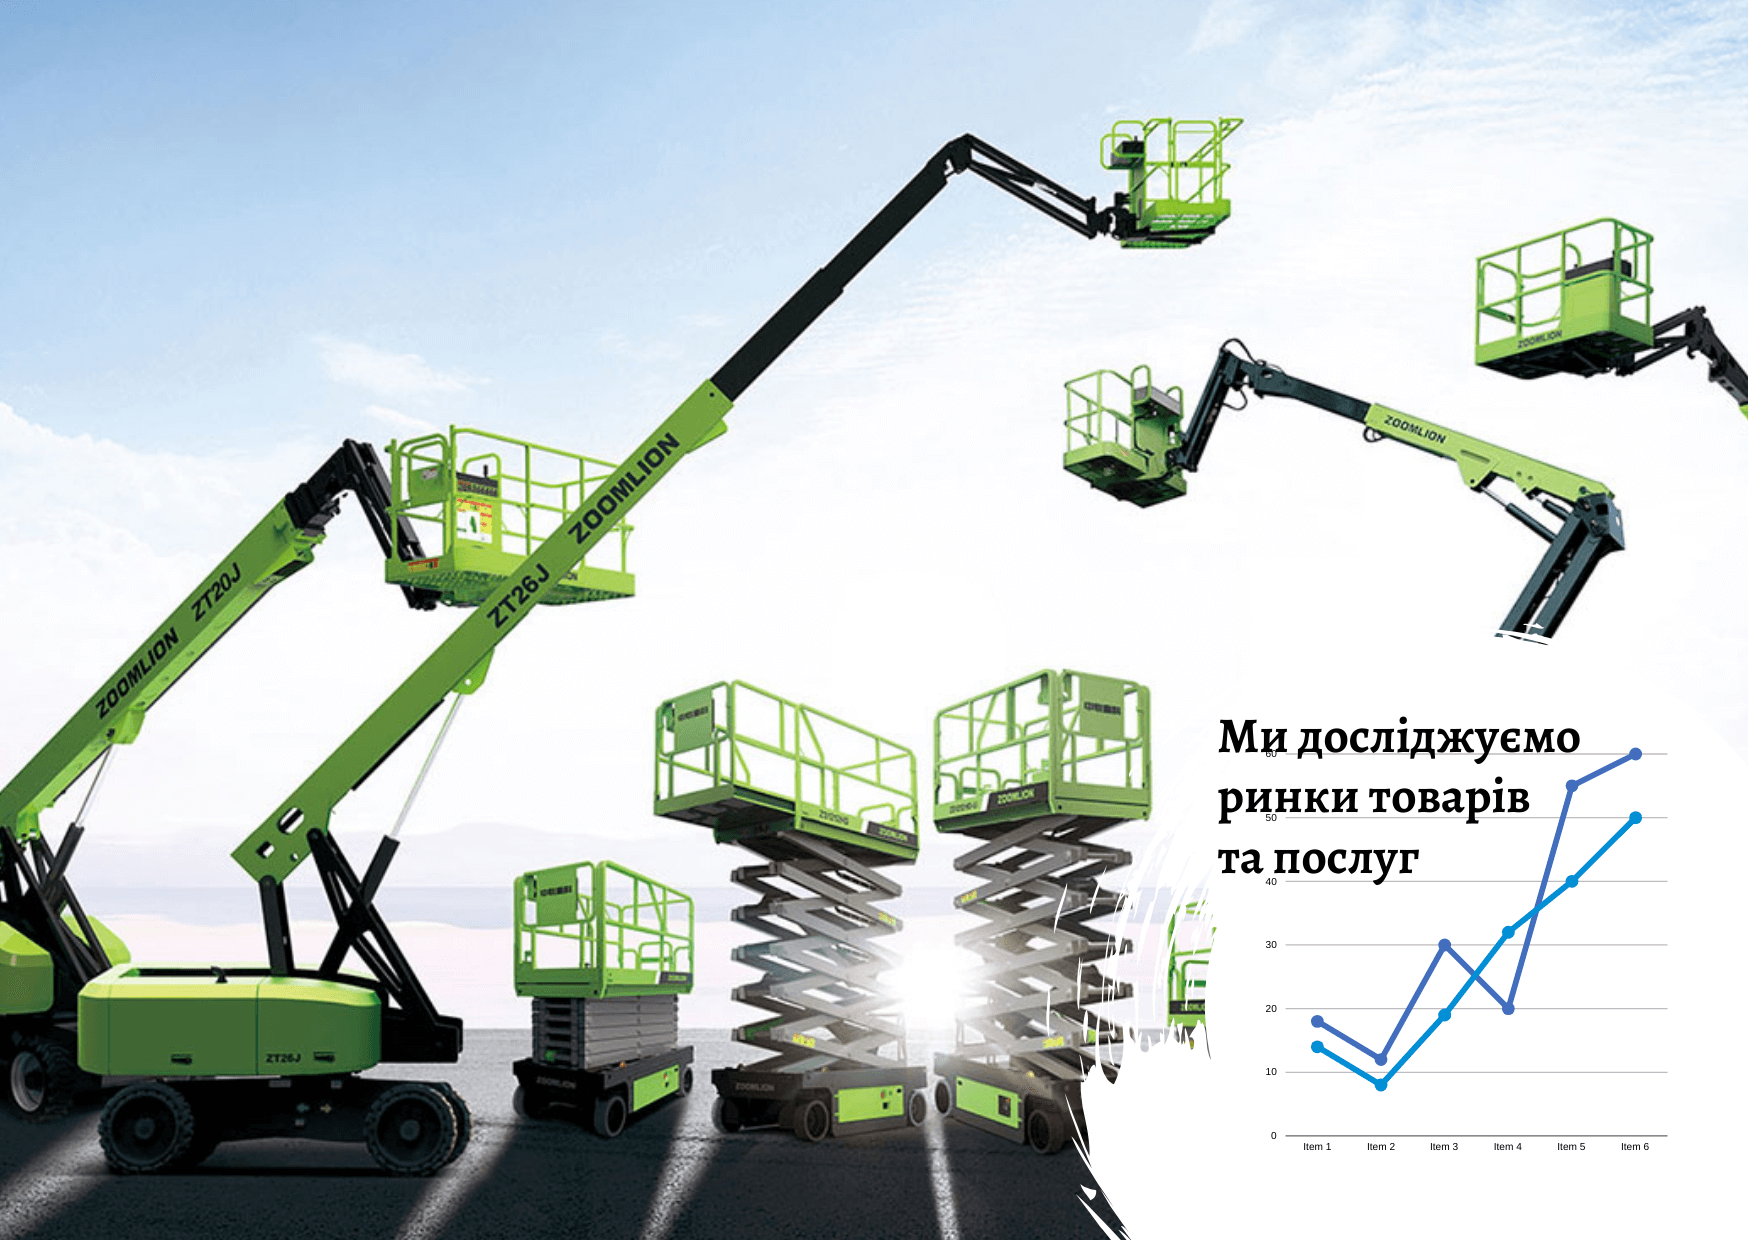 Ринок підйомної техніки в Україні: споживчі переваги